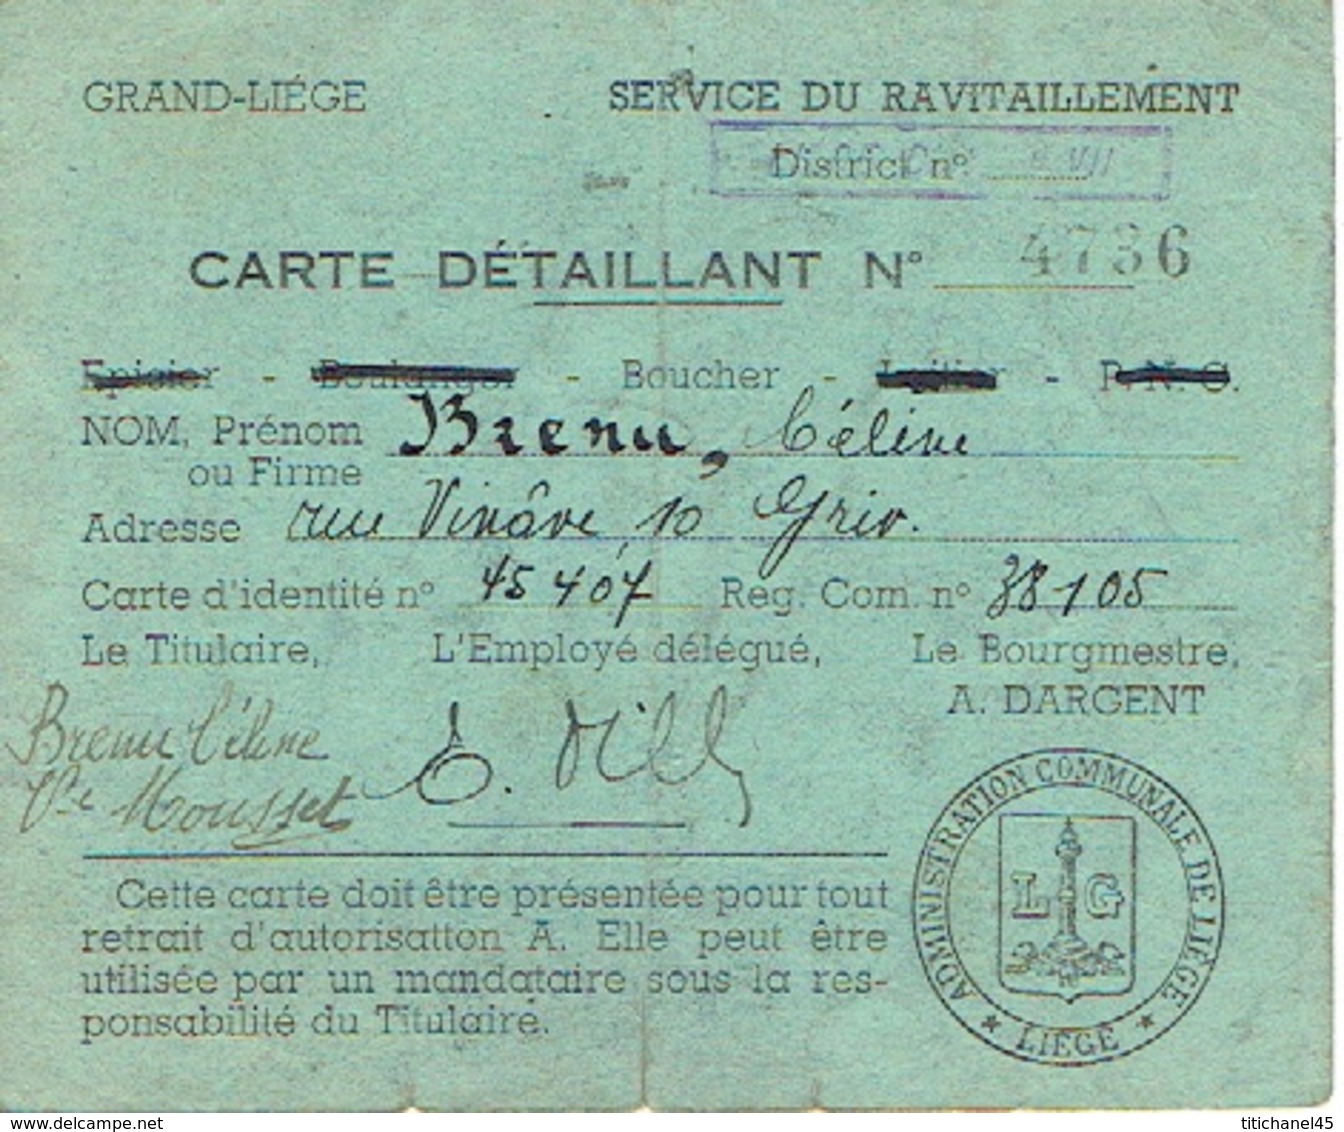 GRAND-LIEGE - SERVICE DE RAVITAILLEMENT - CARTES DETAILLANT BOUCHER - BRENU Céline Vve MOUSSET à GRIVEGNEE - 1914-18